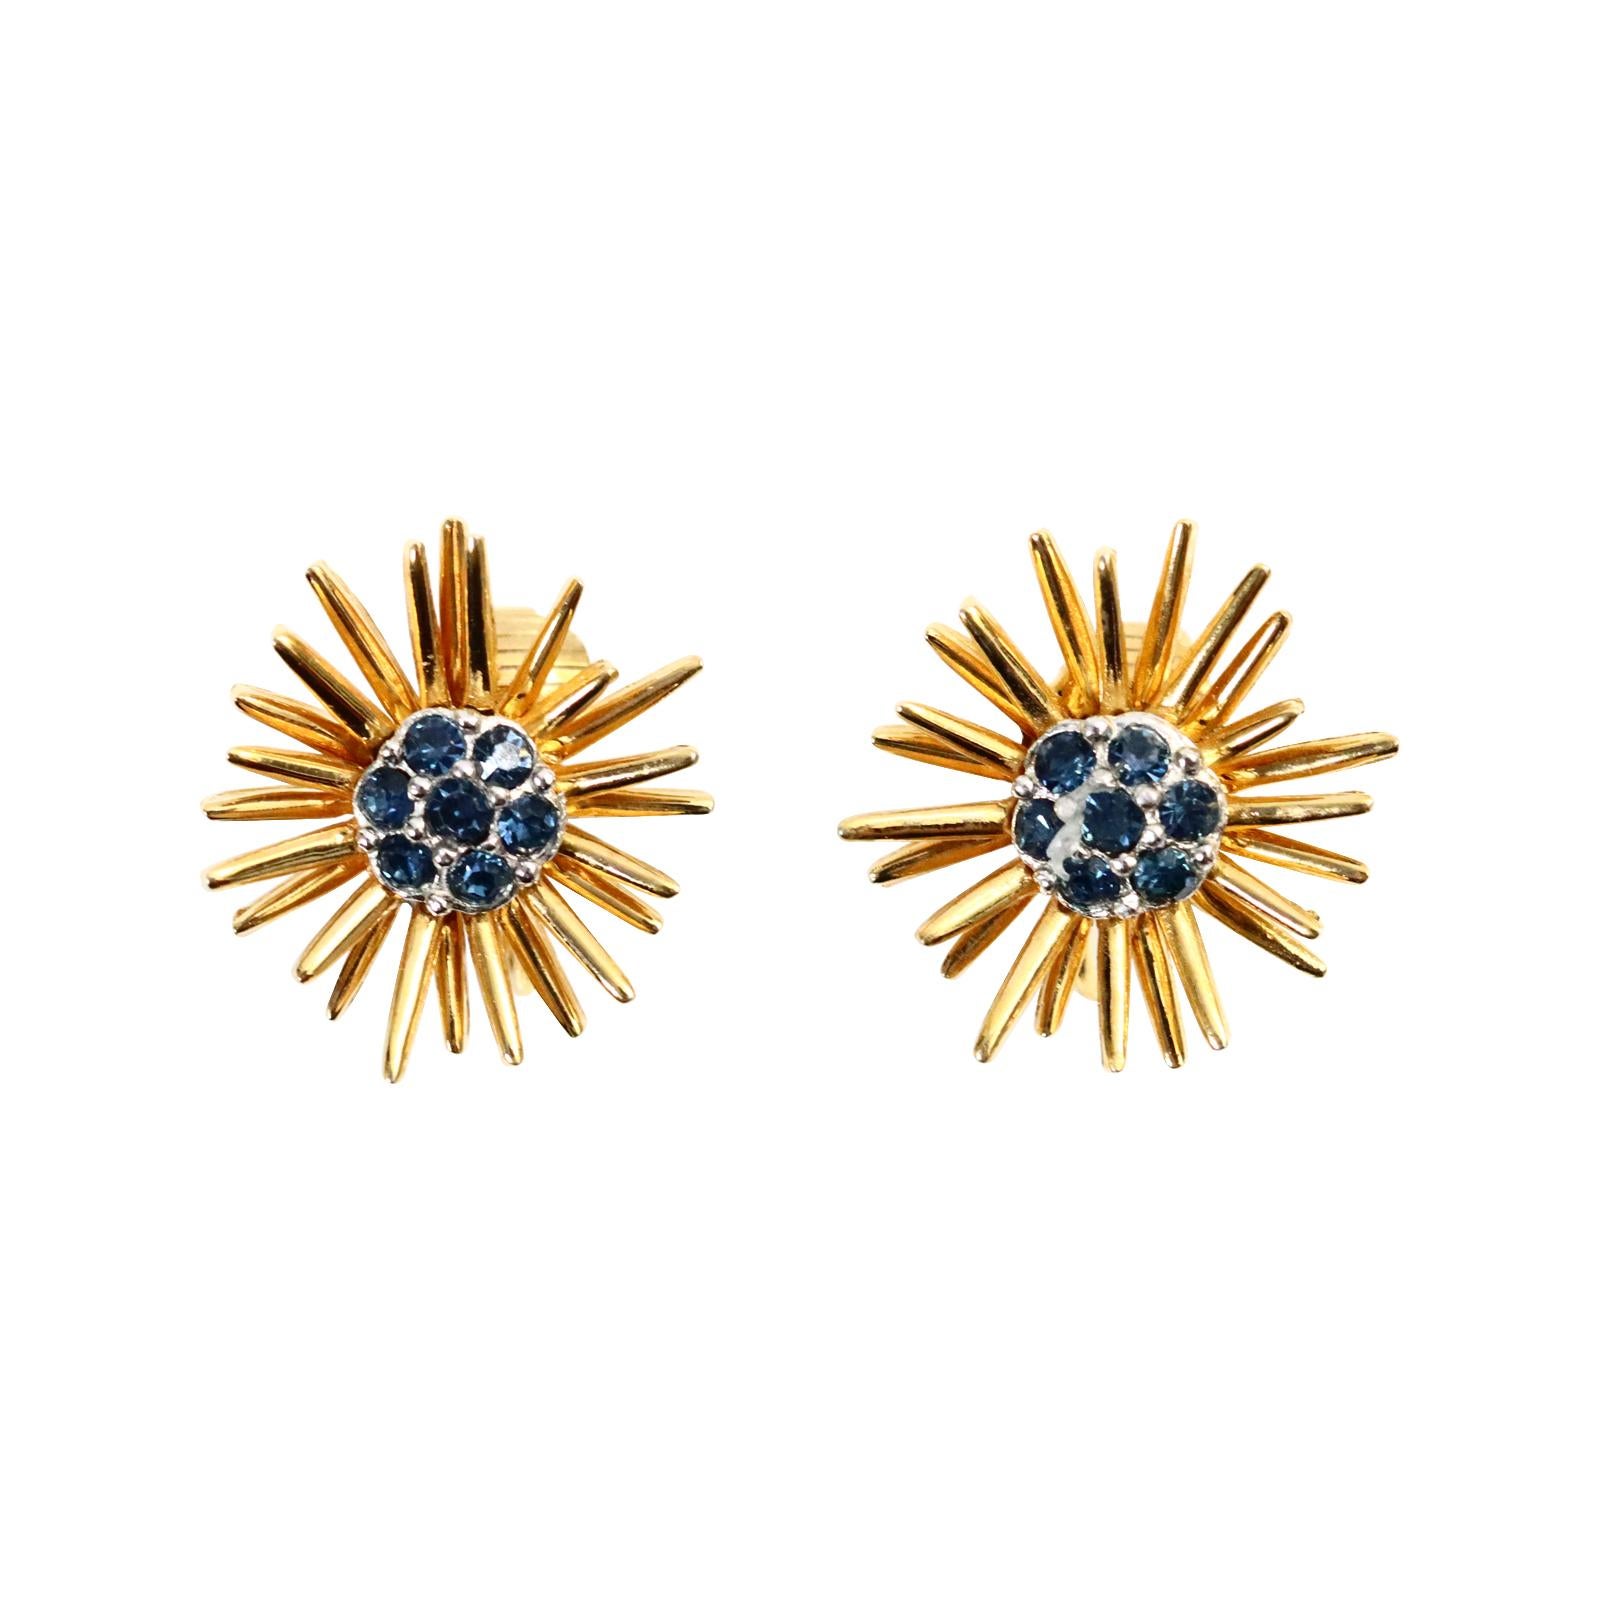 Vintage D'Orlan Gold Starburst mit blauen Diamanten Ohrringe CIRCA 1980s. Diese Ohrringe sehen so schick aus, weil das Gold und das Blau, das in der Mitte in silberfarbenes Metall gefasst ist, nebeneinander stehen. Sie sind gut verarbeitet und